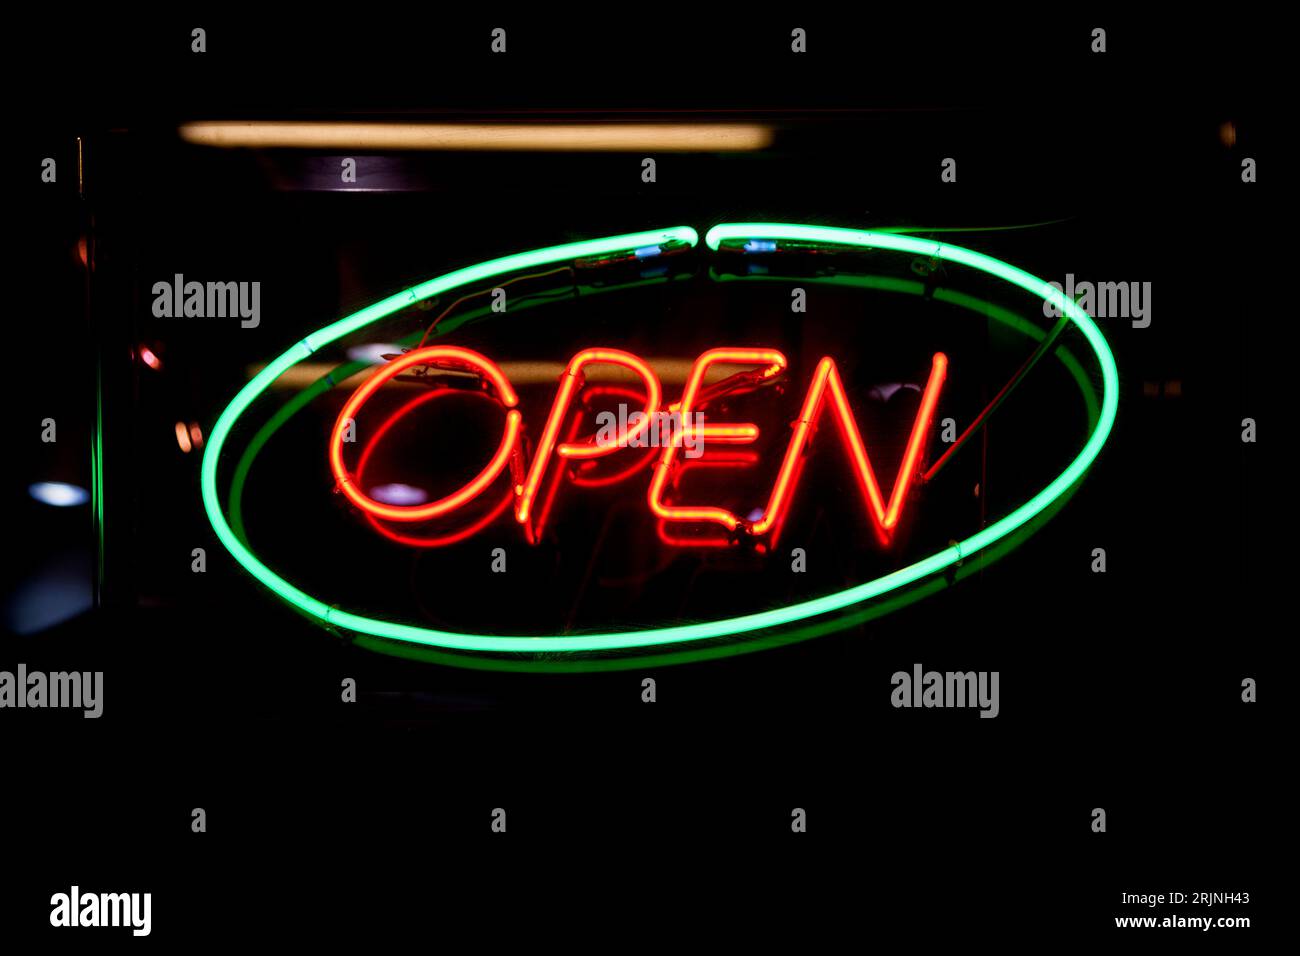 Nahaufnahme eines Neonlichts, das in ein grünes Oval geformt ist und das Wort „Open“ (offen) innen rot geschrieben ist. Stockfoto